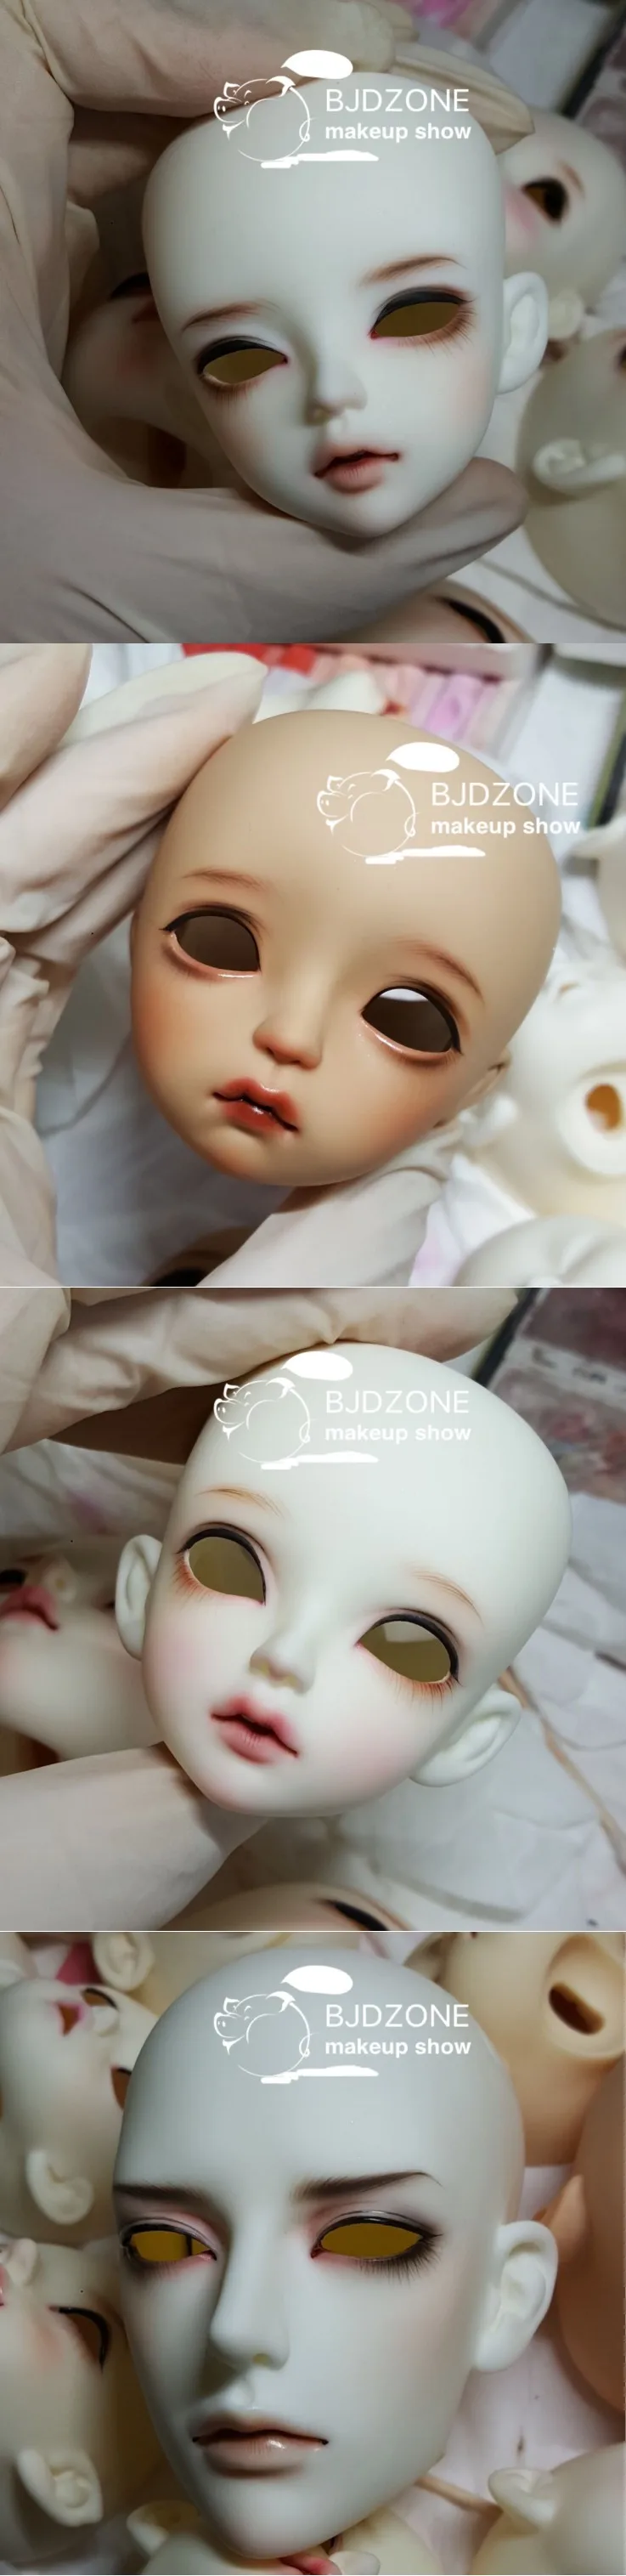 Макияж тела краснея плата для кукол в BJDZONE магазин игрушек высокого качества магазин